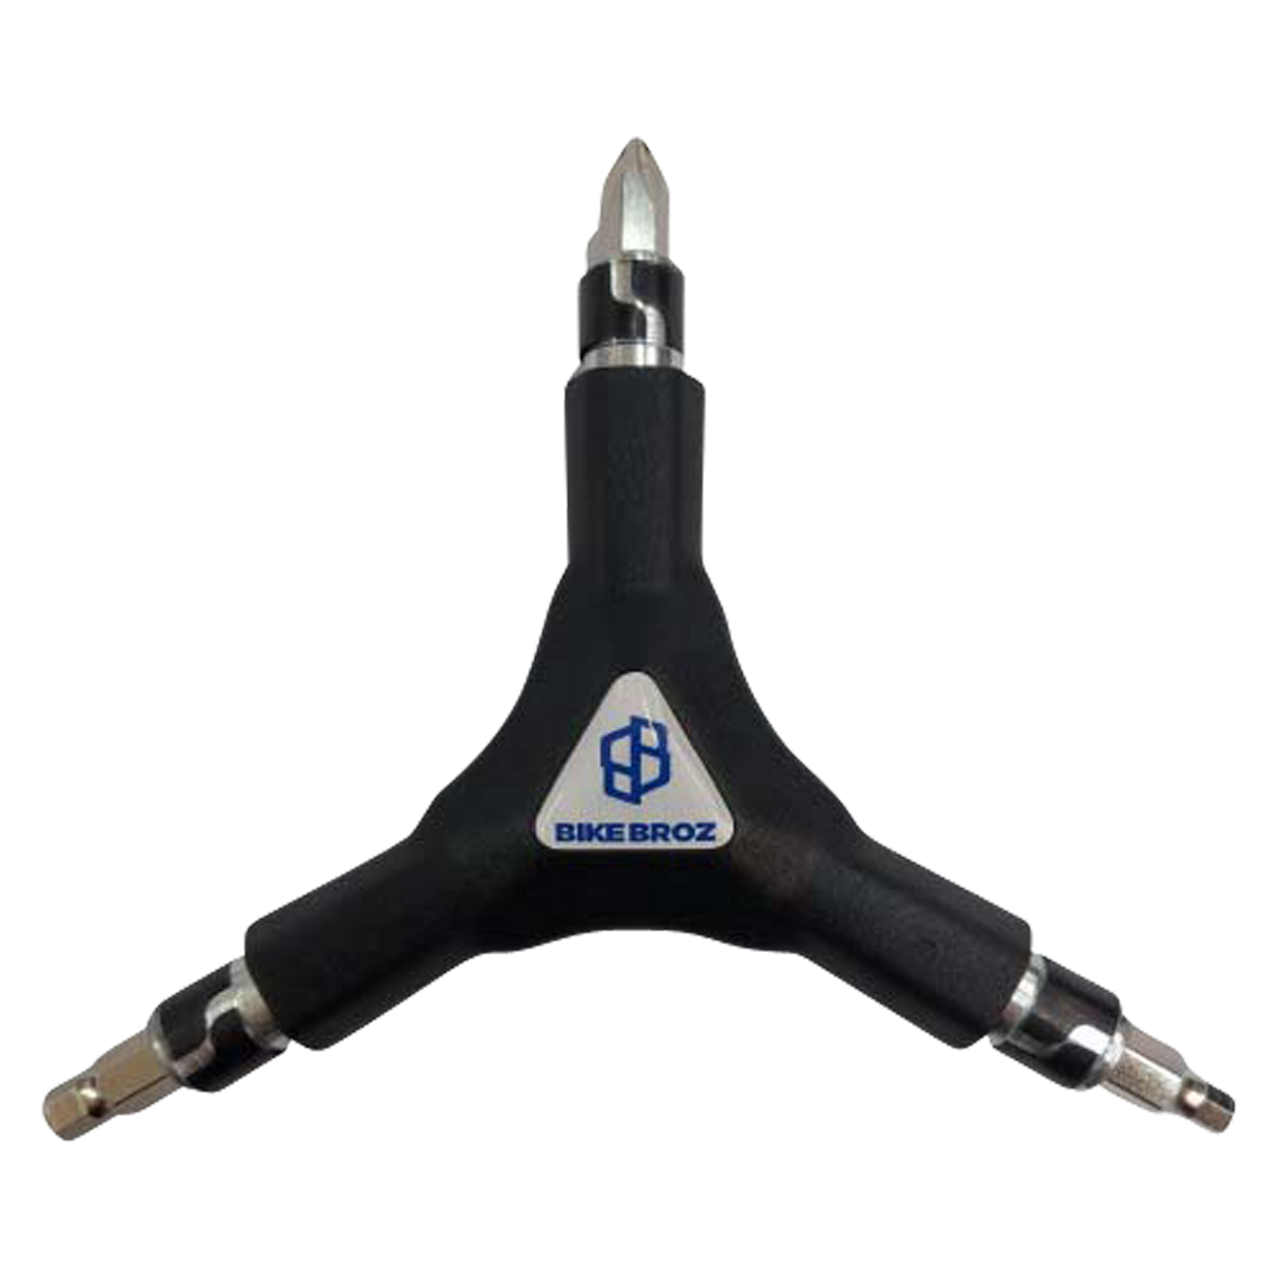 Produktbild von Drei-Arm-Schlüssel von BikeBroz.